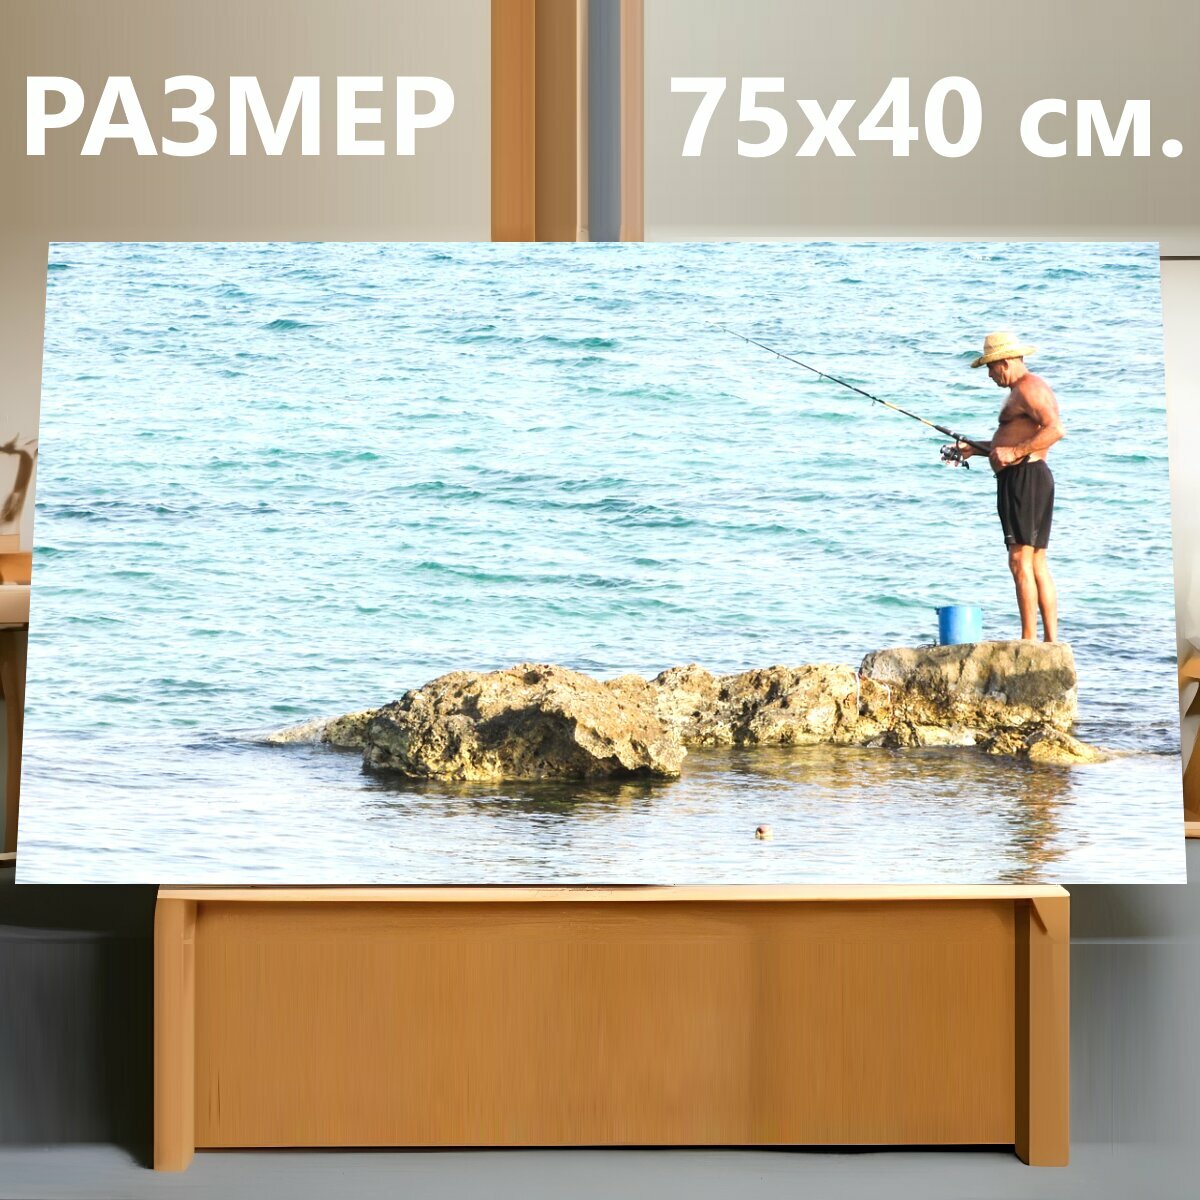 Картина на холсте "Рыбак, море, ловит рыбу" на подрамнике 75х40 см. для интерьера